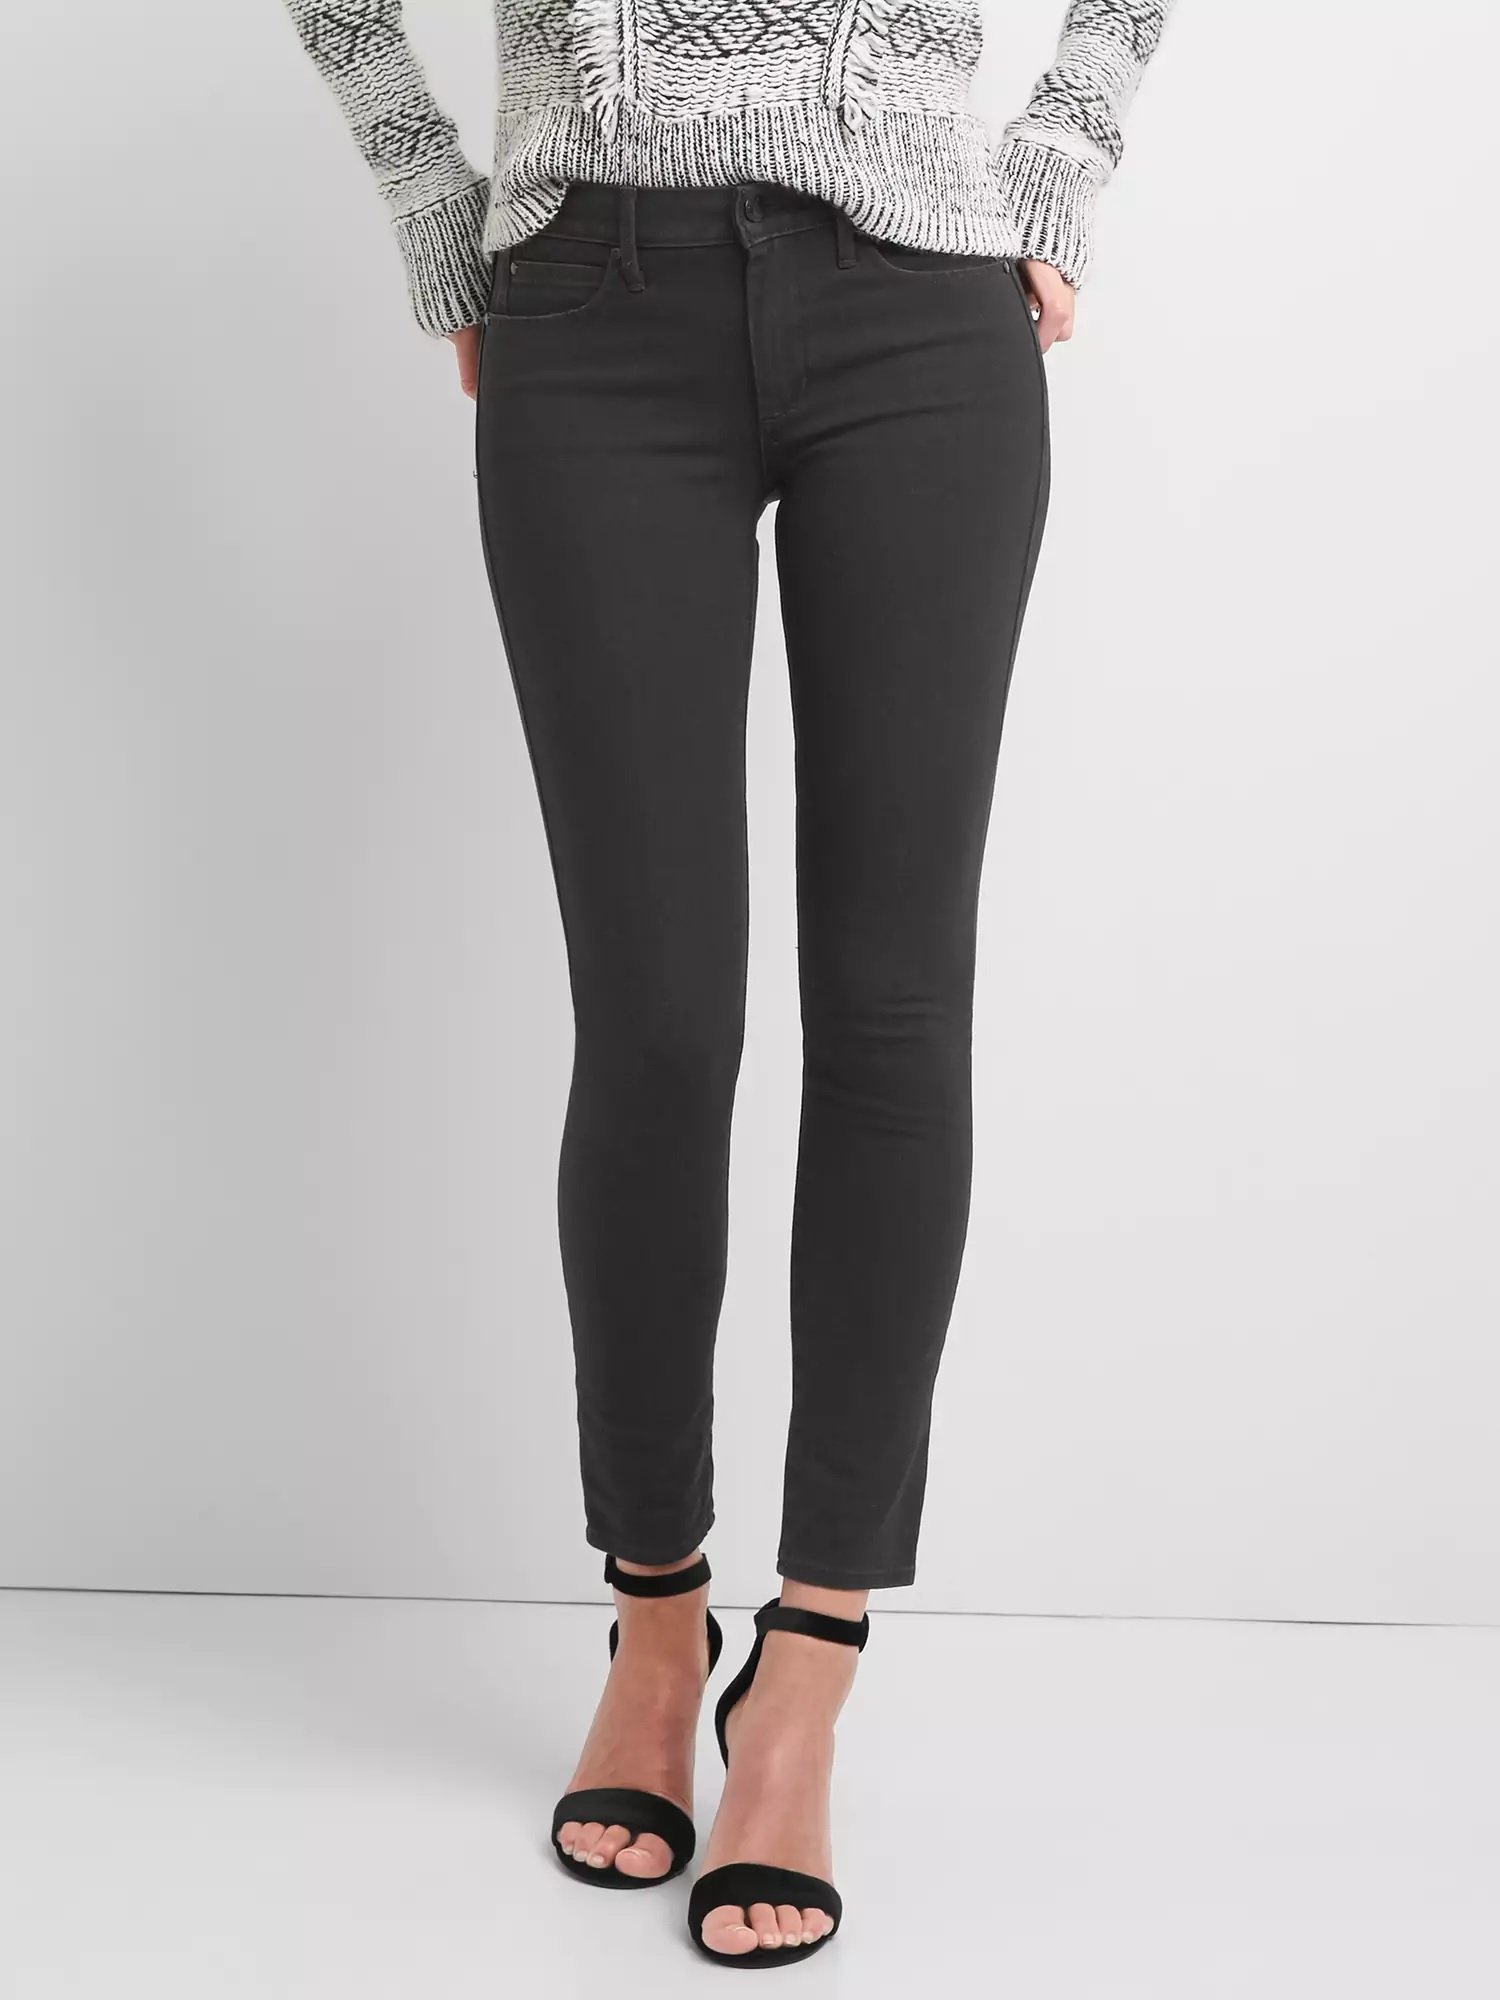 Orta belli Super Slimming true skinny jean pantolon product image